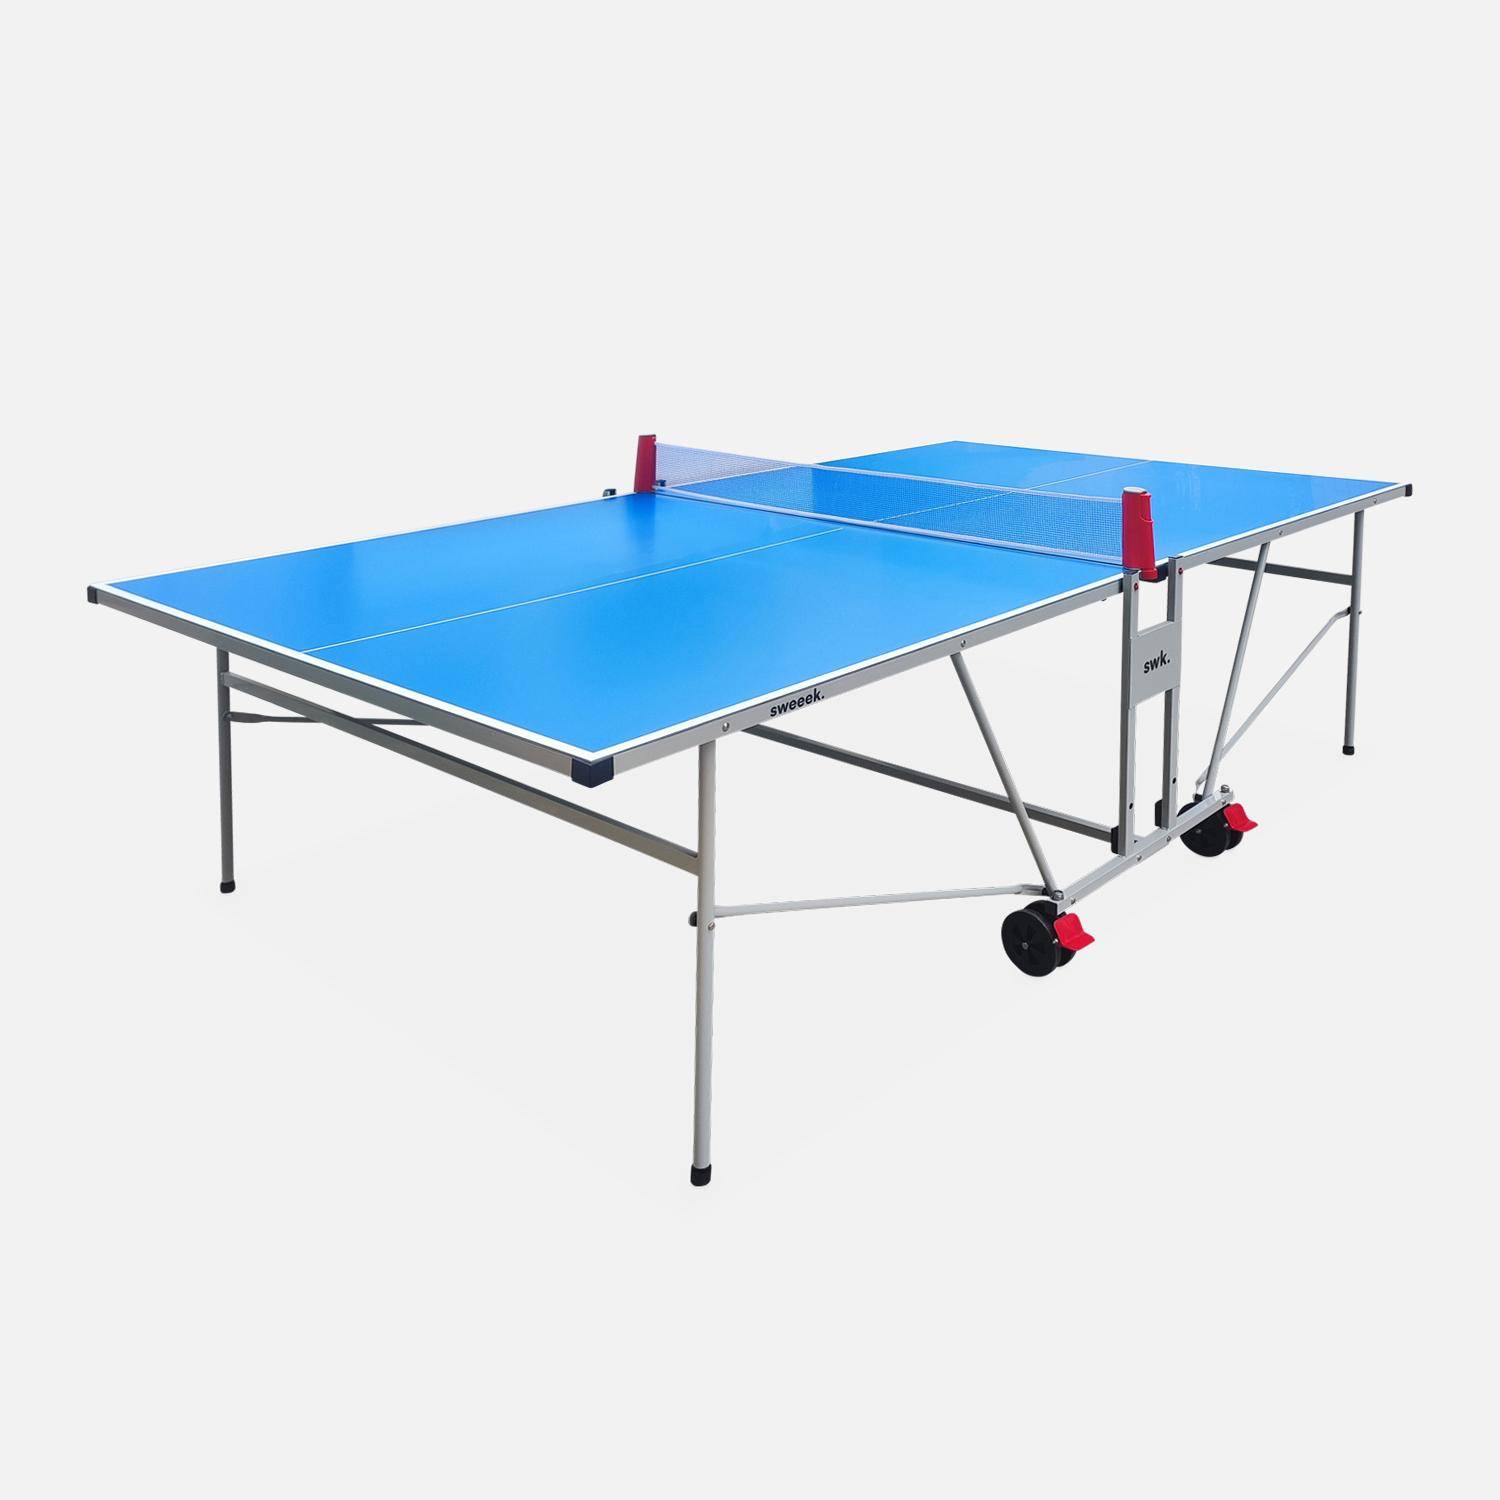 OUTDOOR tafeltennis blauw met 2 rackets en 3 ballen, voor buitengebruik, sport tafeltennis Photo1